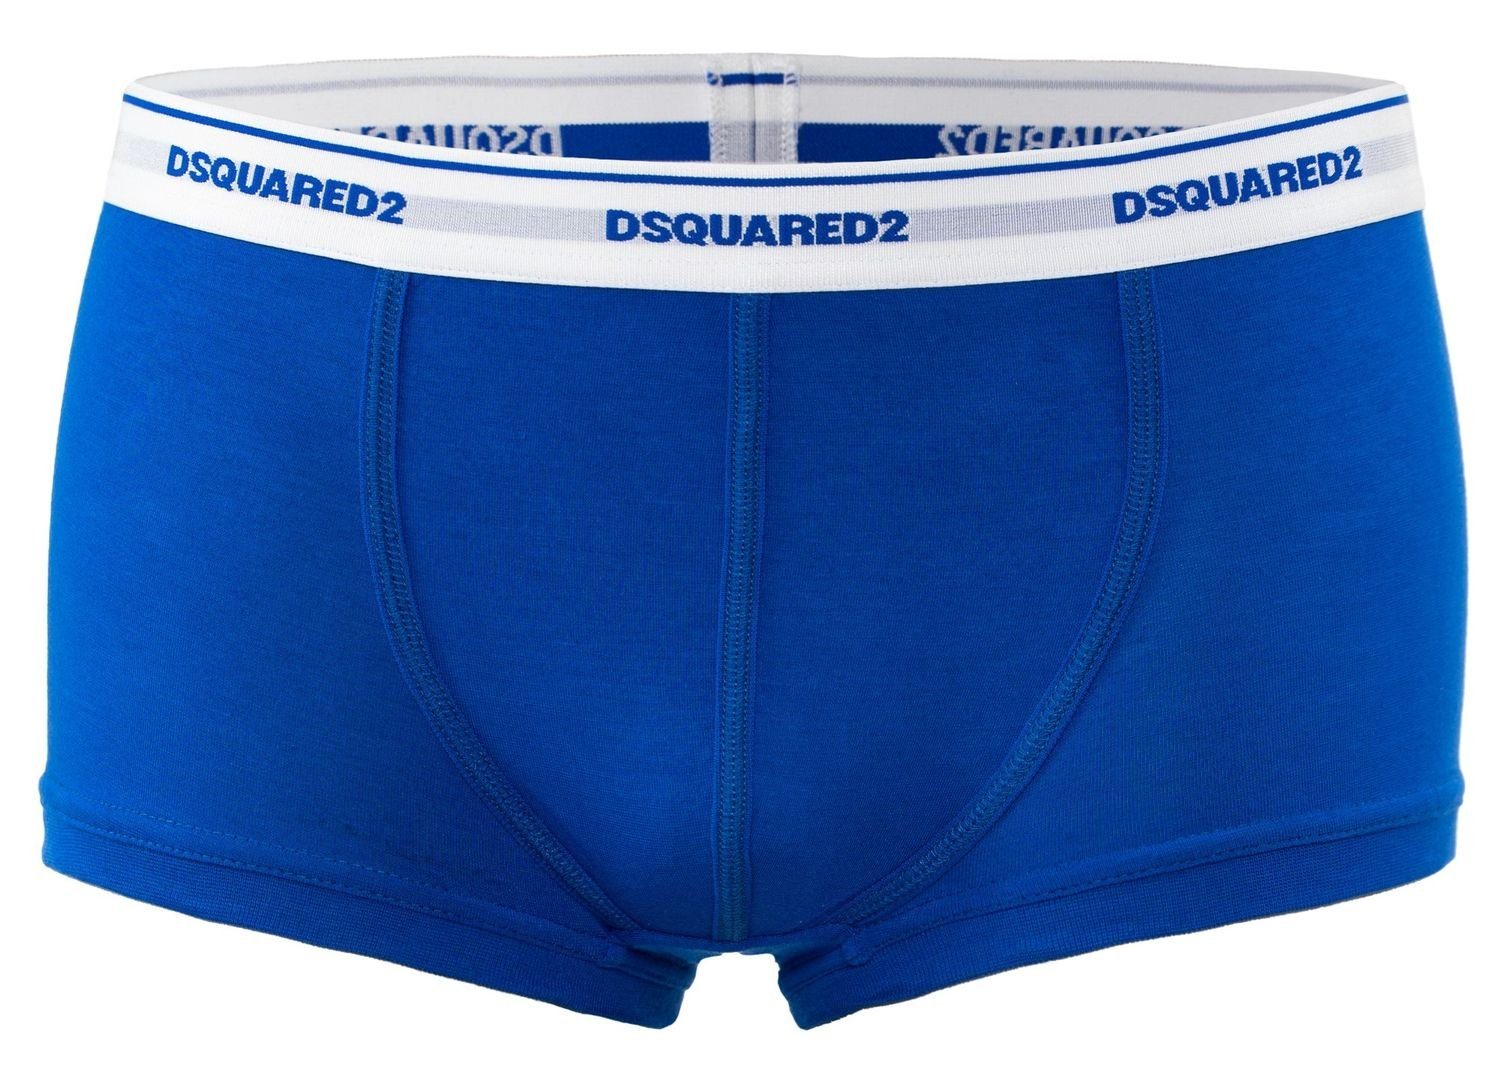 Dsquared2 Trunk Dsquared2 Boxershorts / Pants / Shorts / Boxer in blau Größe M / L / XL / XXL (1-St)